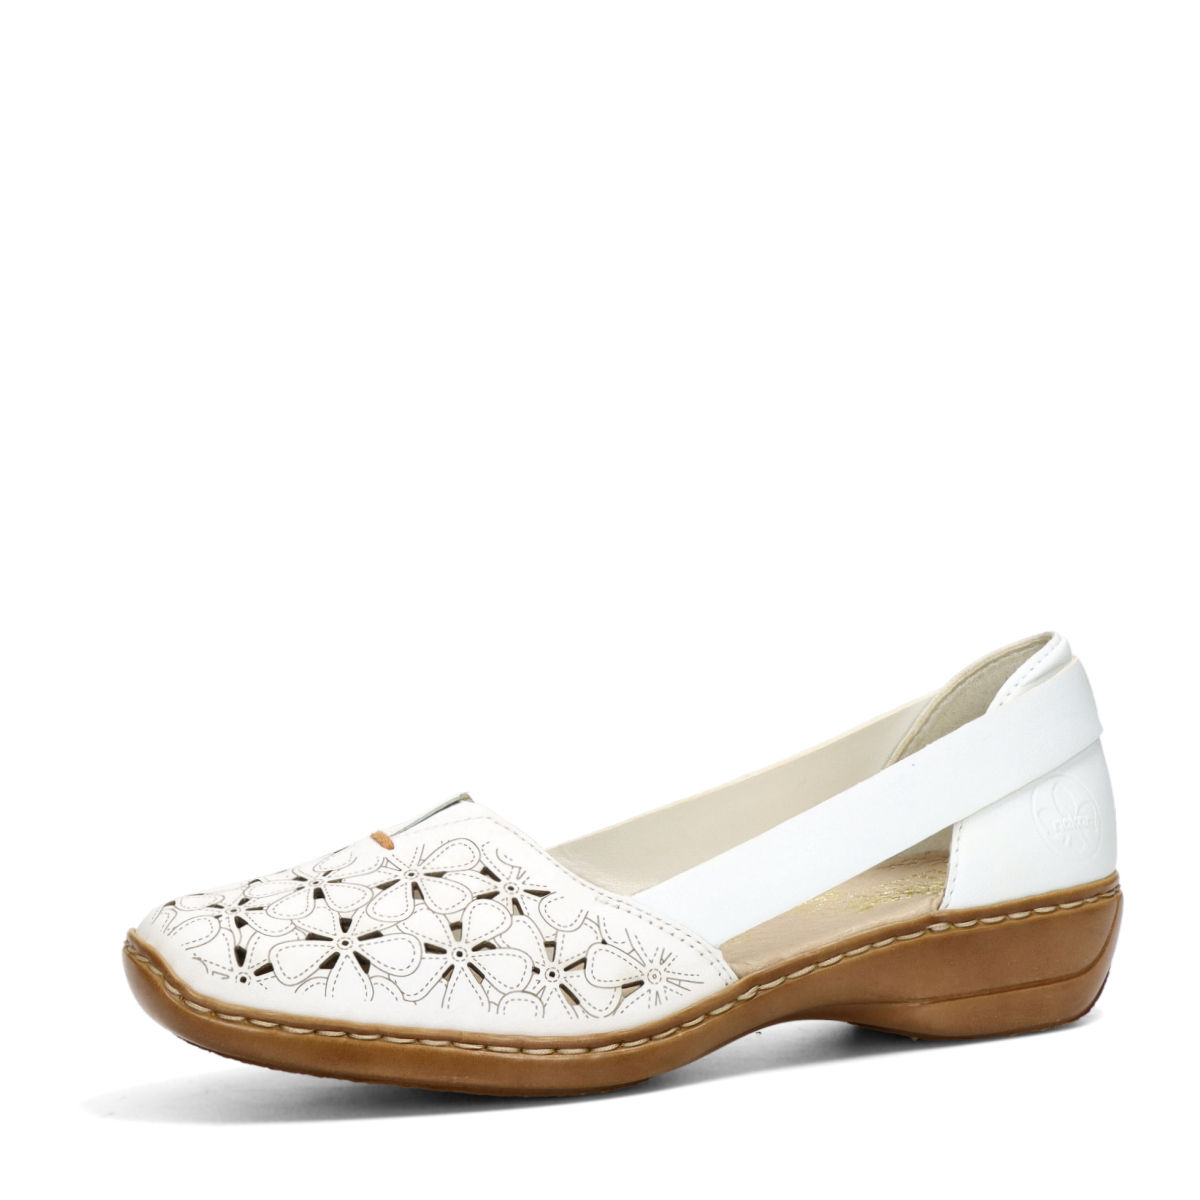 Stoutmoedig kruis Graden Celsius Rieker women's comfortable low shoes - white | Robel.shoes